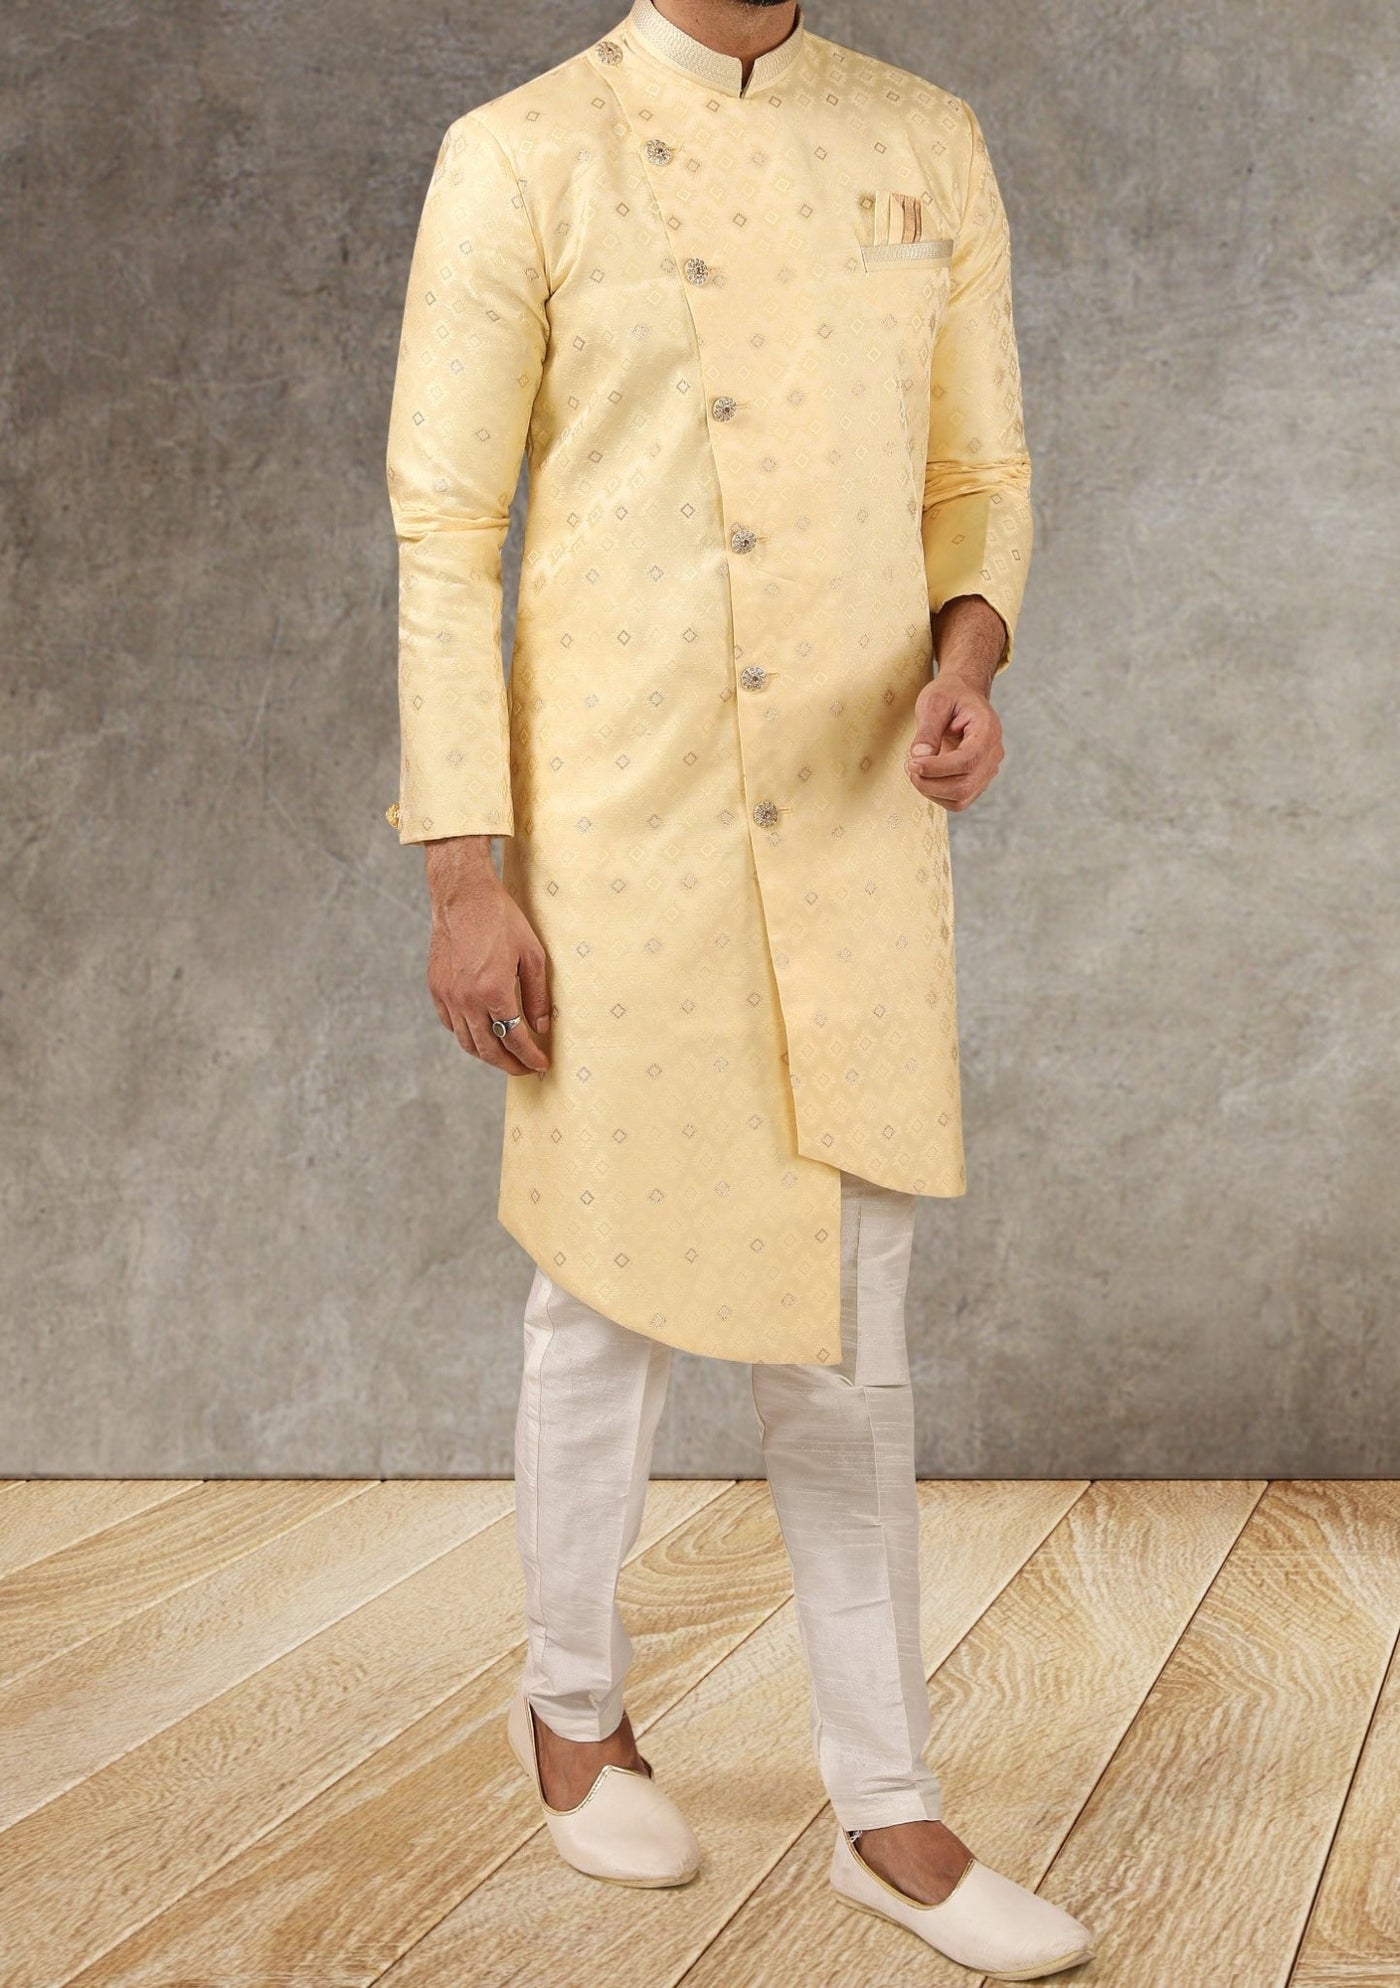 Men's Indo Western Party Wear Sherwani Suit - db20659